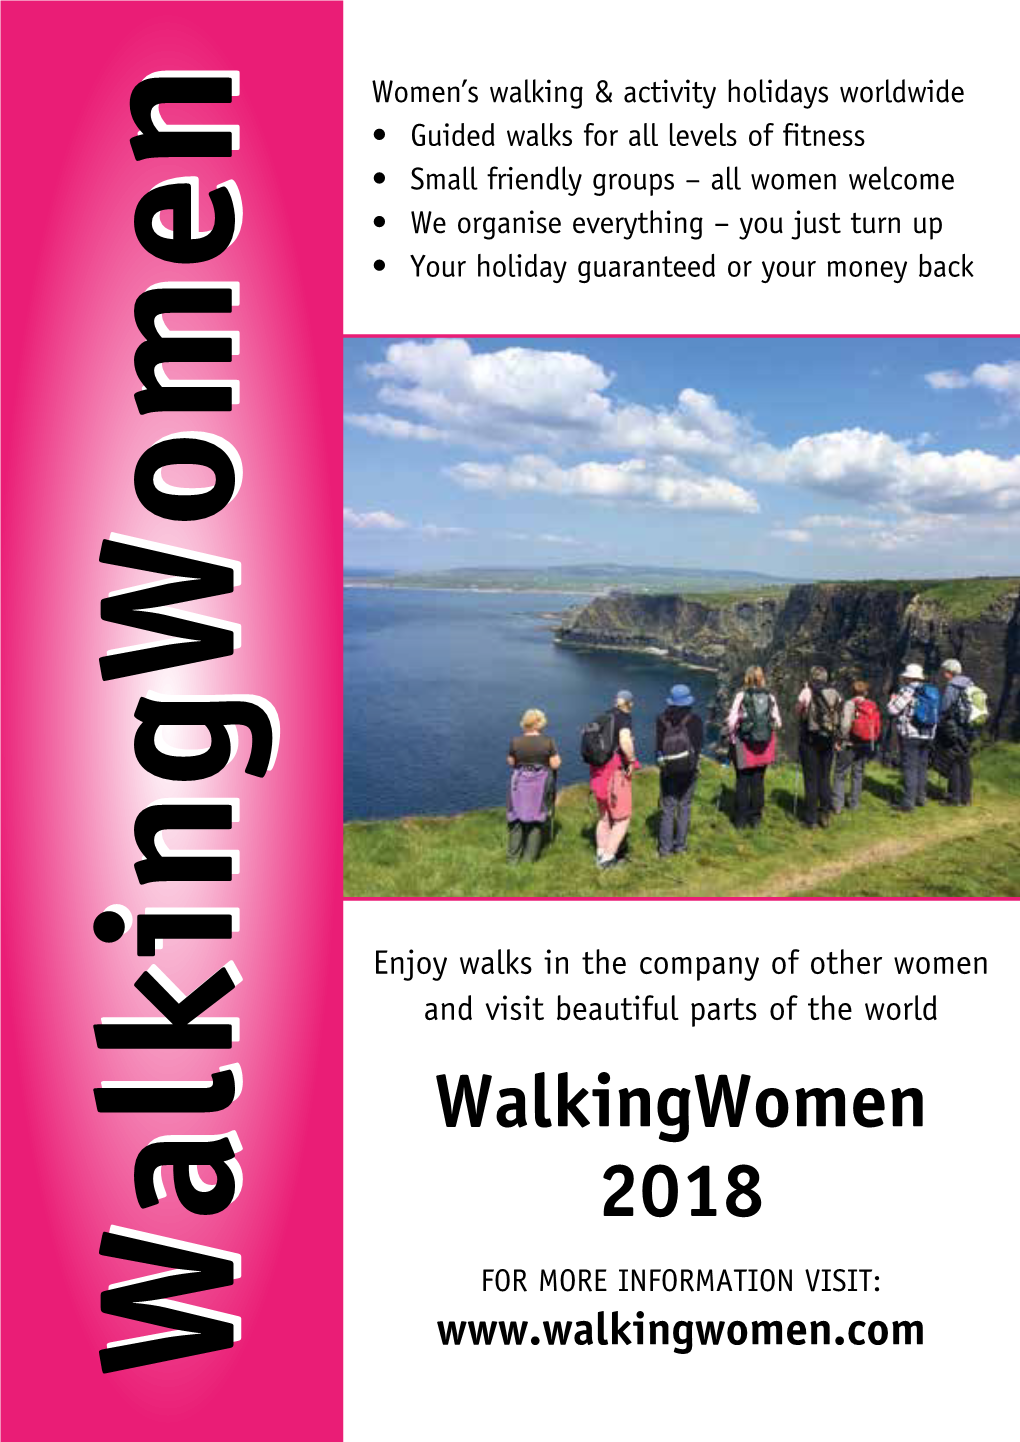 Walkingwomen 2018